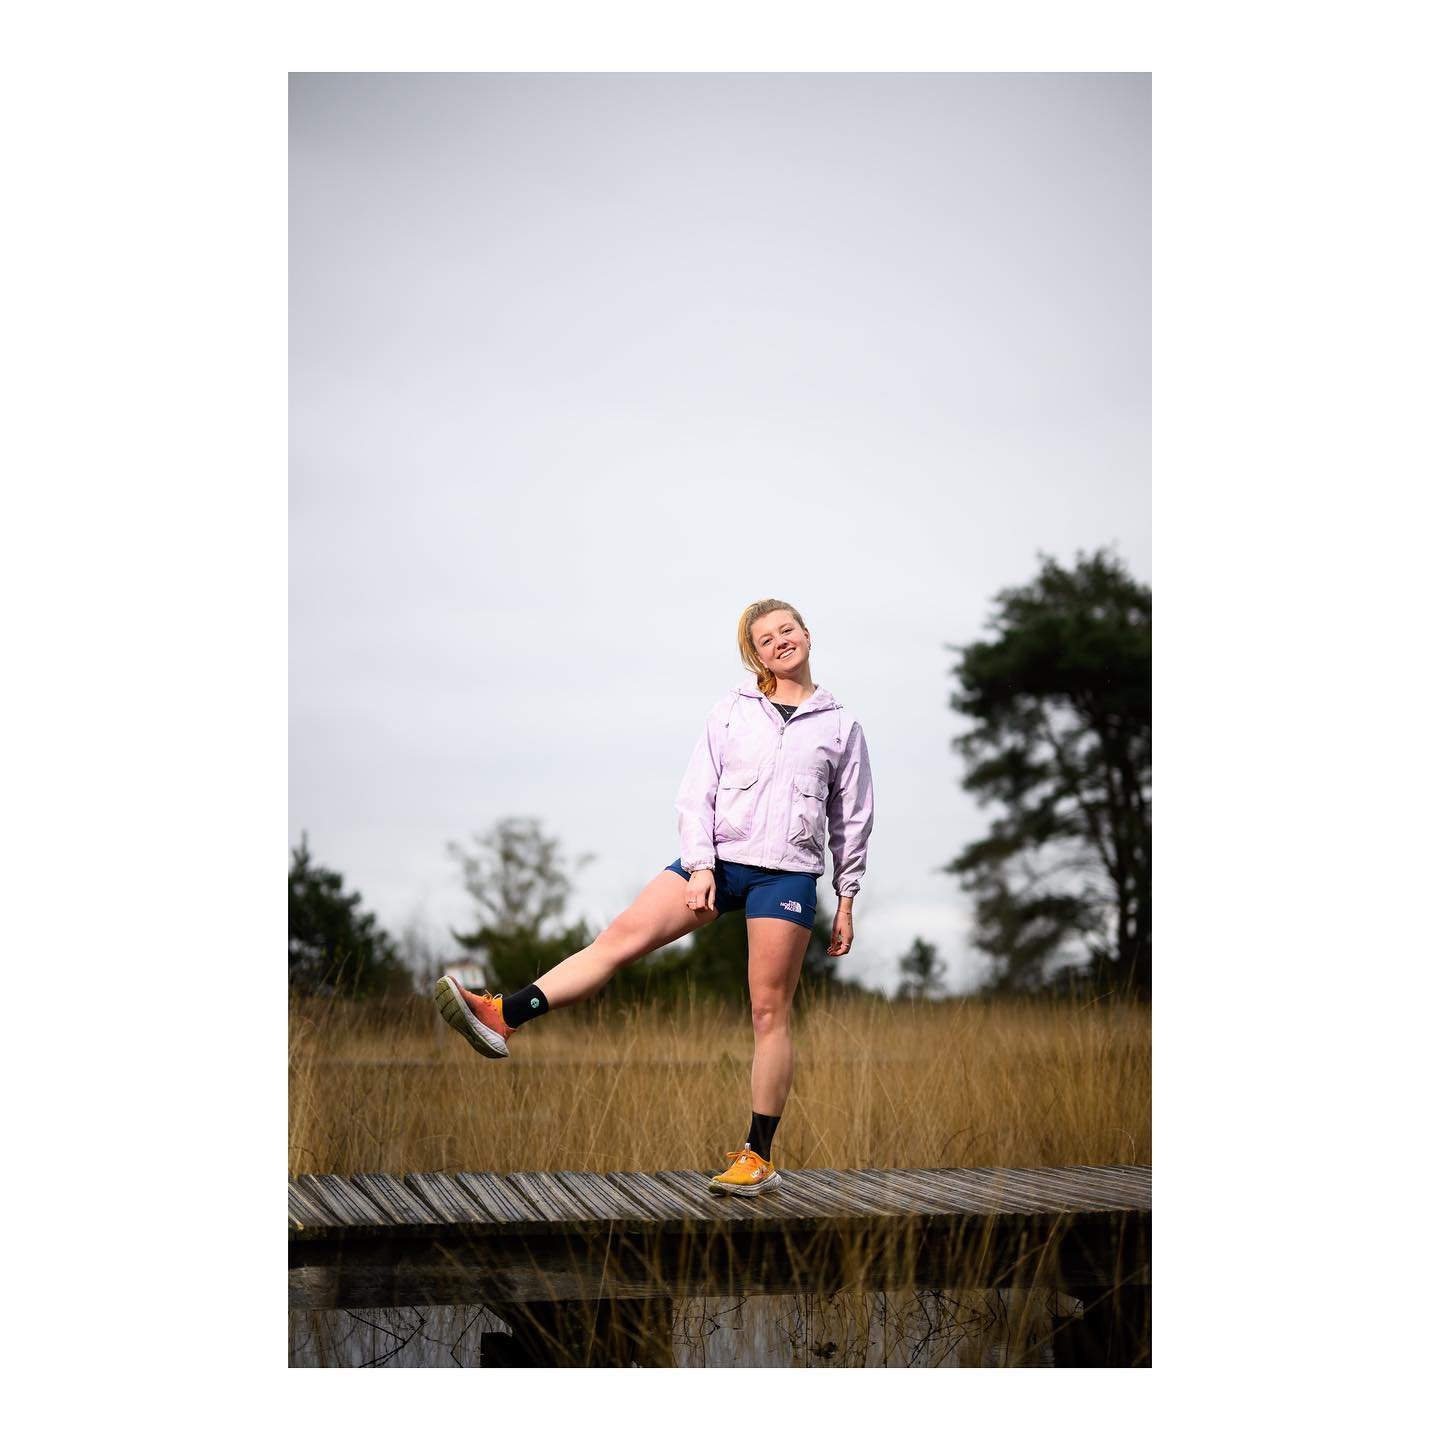 Happy vibes met @lifeofmaart voor #runnersworldnl
.
.
.
.
.
#runnersworld #runnersworldmagazine #runstagram #triathlon #gosportief #editorialphotoshoot #covershoot #hardlopen #ikloophard #liefdevoorlopen #nikonZ9 #nikonplena
.
📸 @vincentriemersma